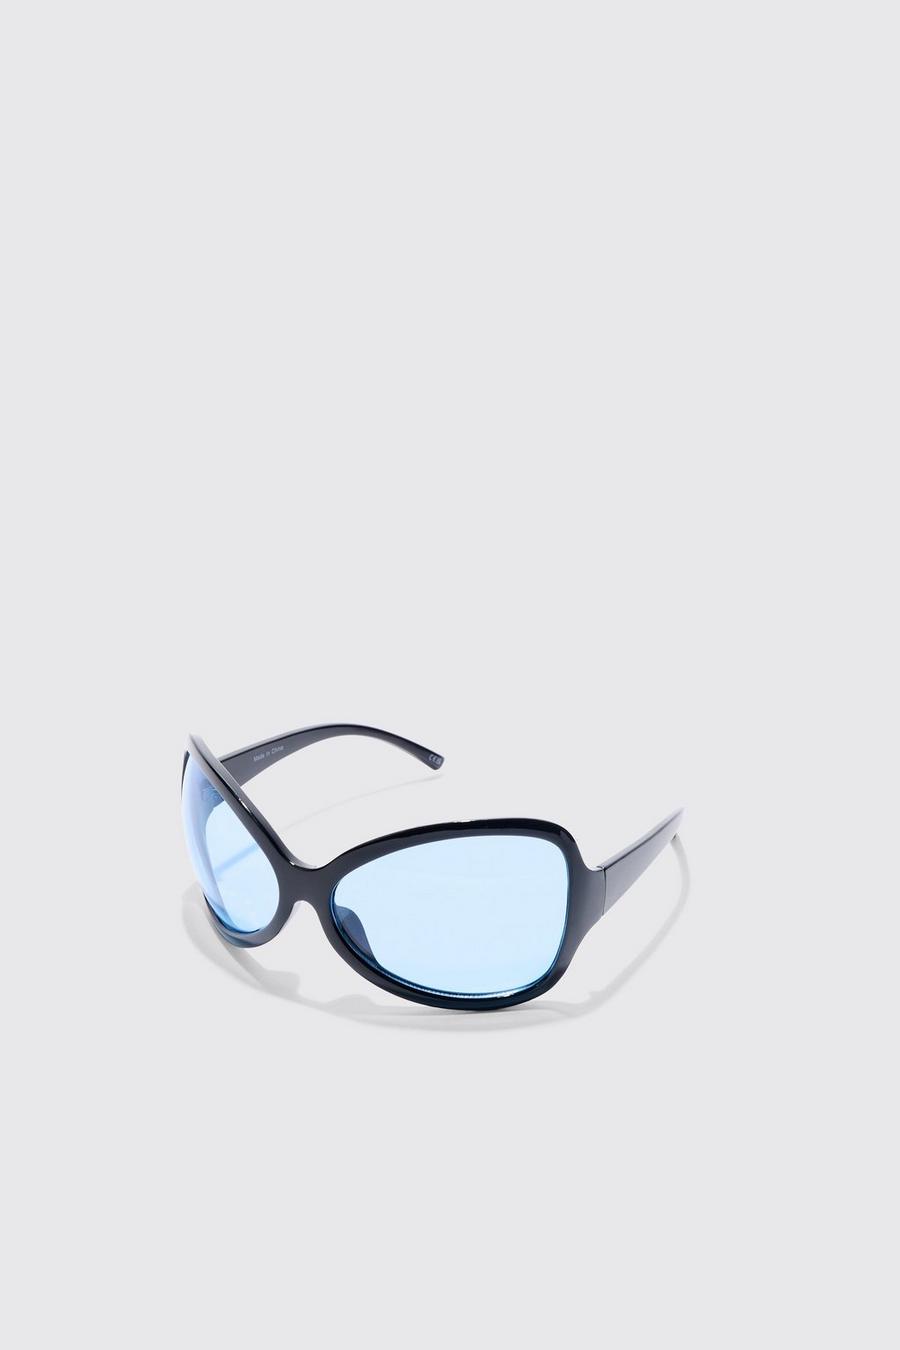 Gafas de sol con lentes protectoras extremas, Black